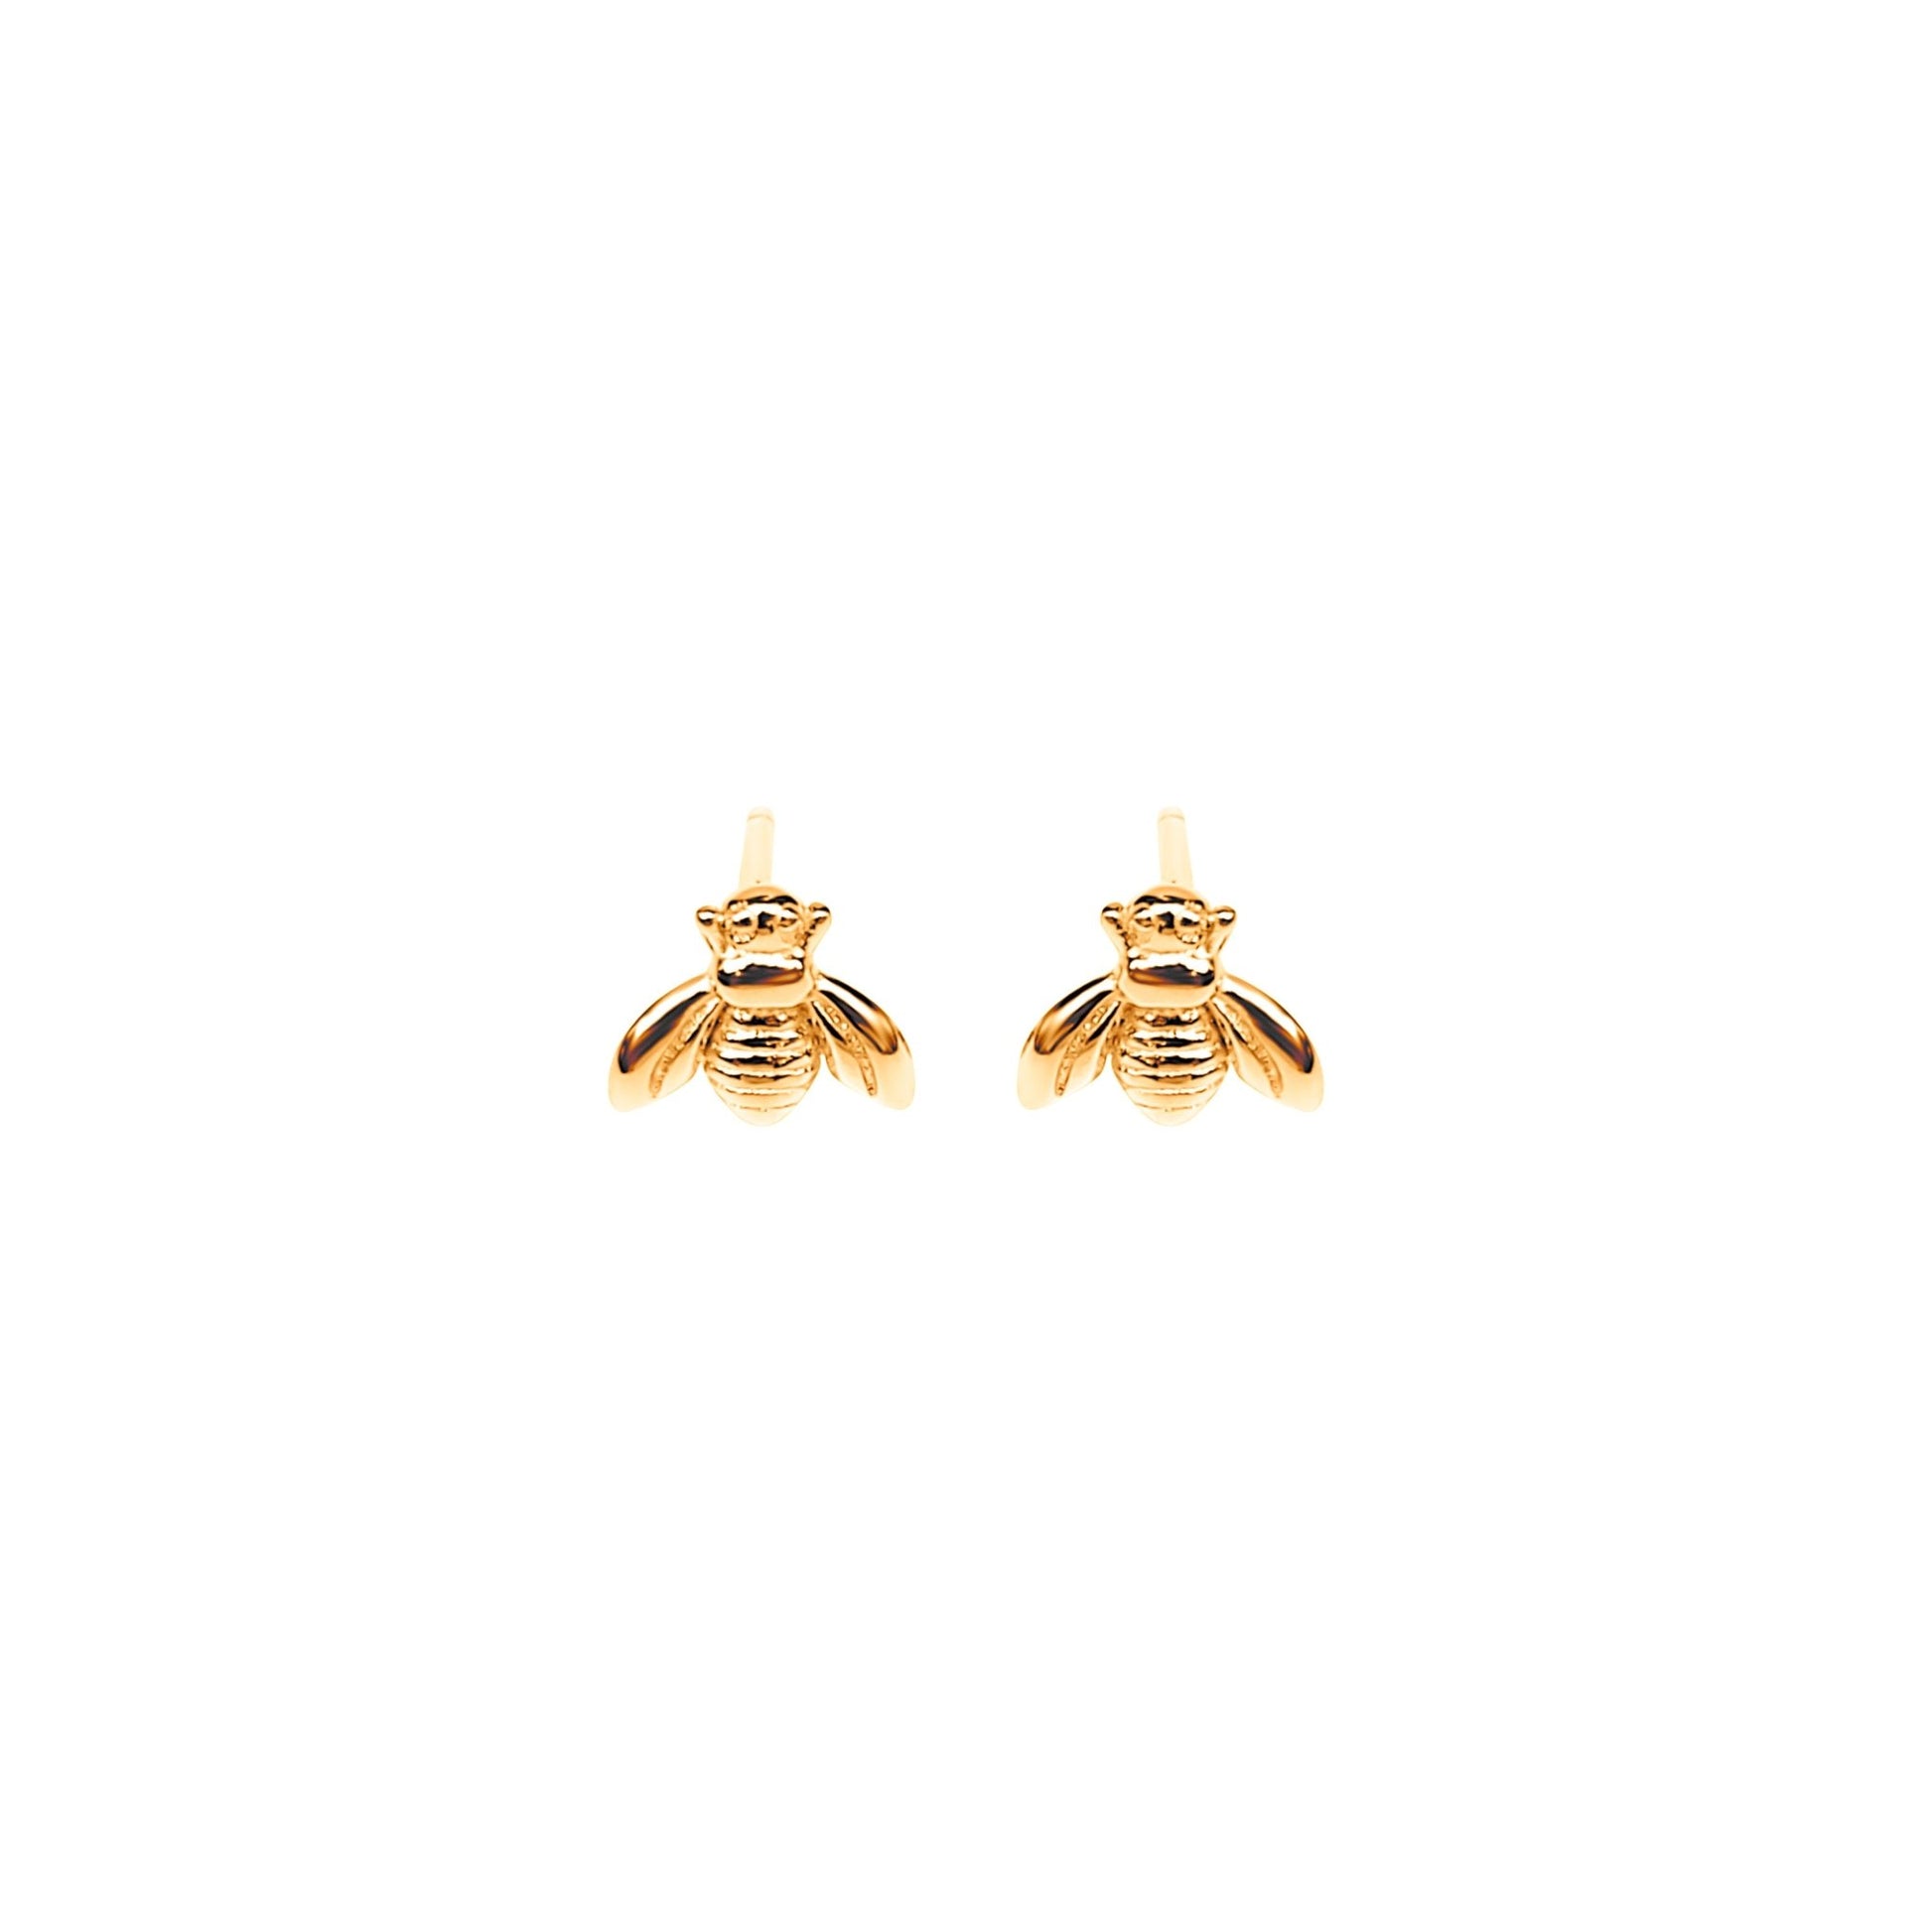 gold plated Erlea Bee sterling silver stud earrings. Cute little bees on earring posts.